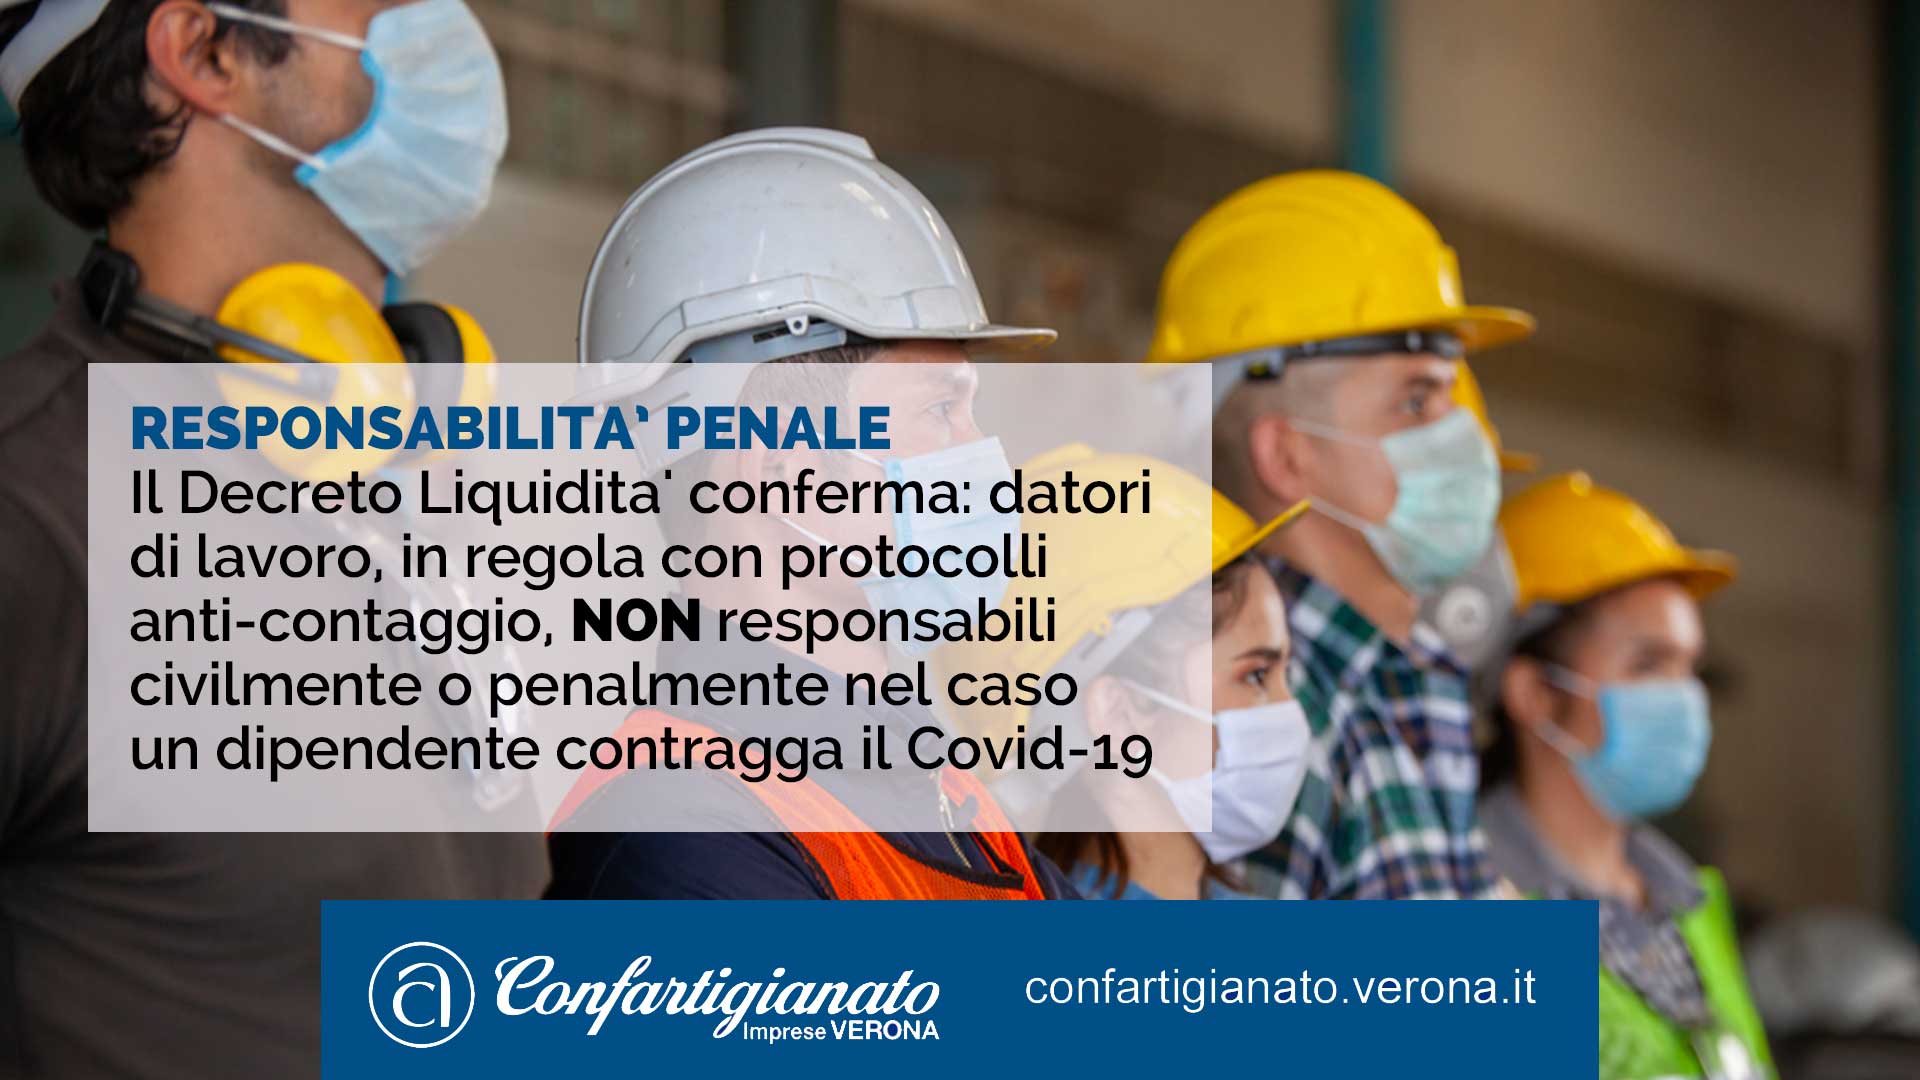 Il Decreto Liquidita' conferma: datori di lavoro in regola con protocolli anti-contaggio non responsabili civilmente o penalmente